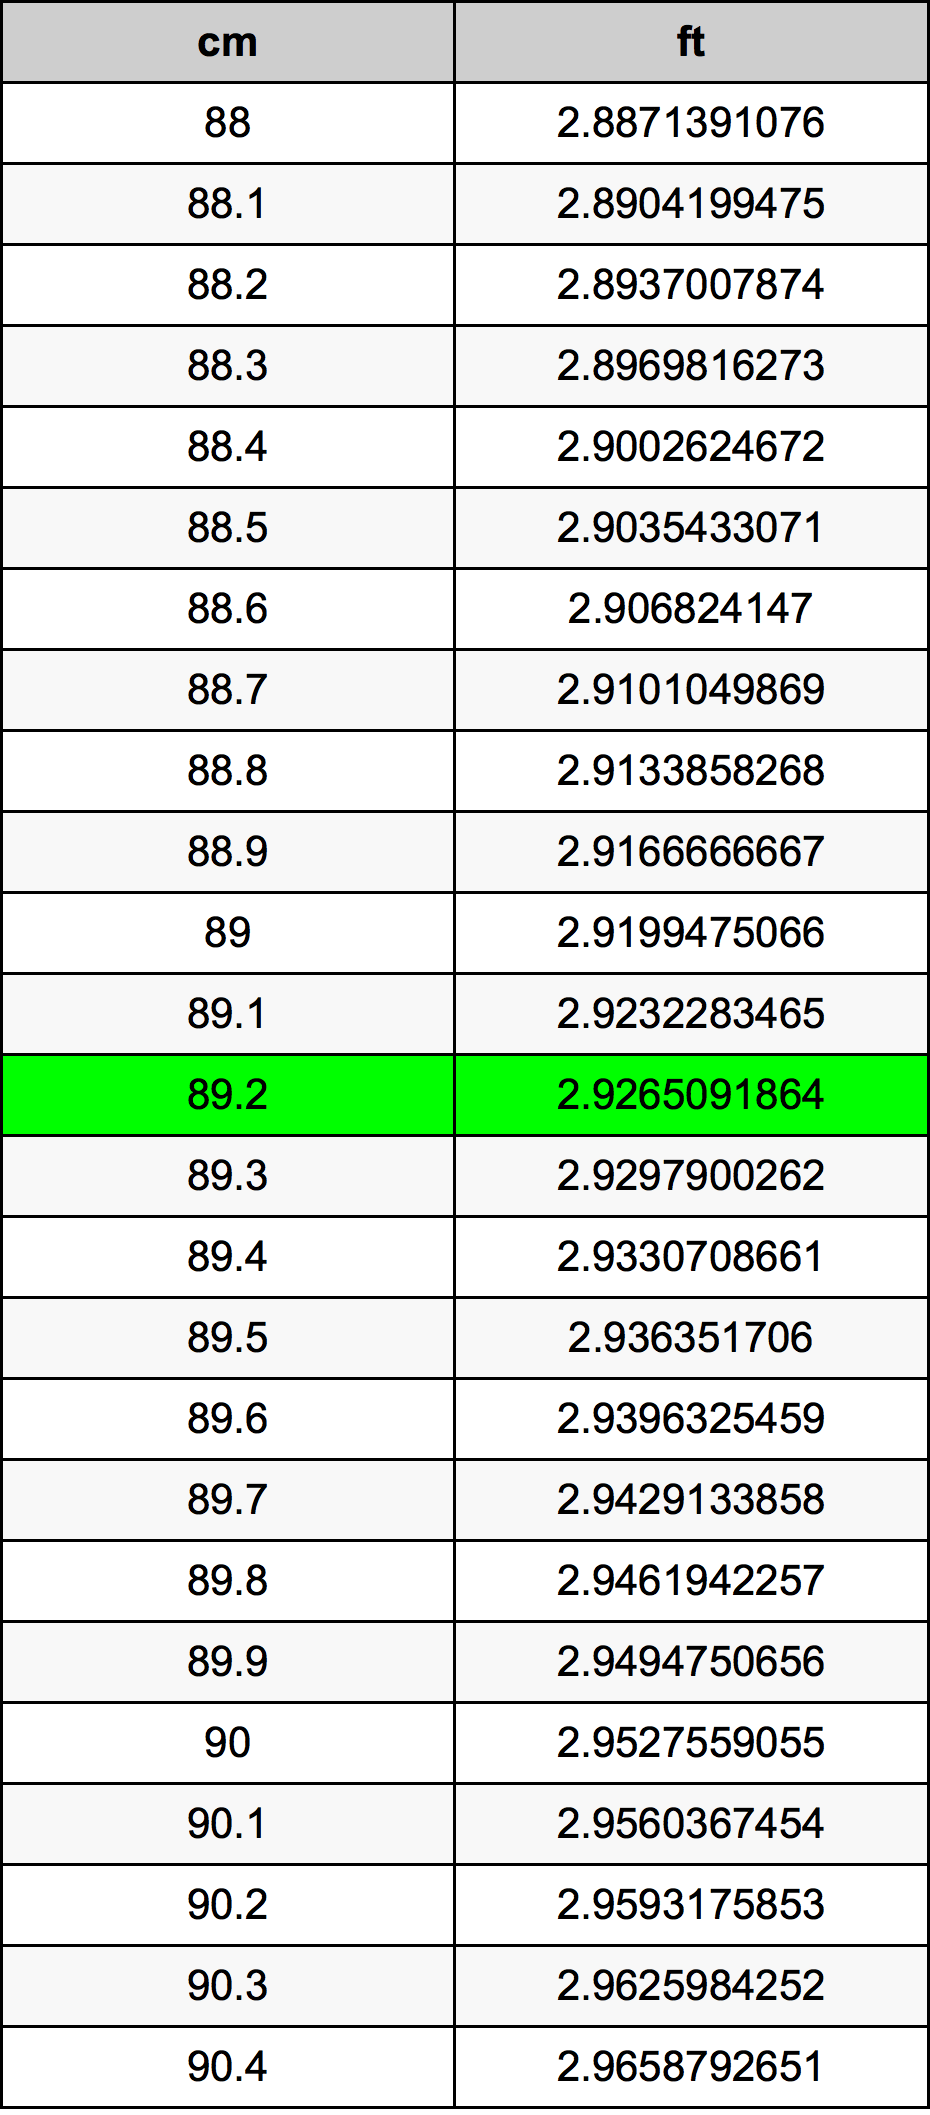 89.2 Centiméter átszámítási táblázat